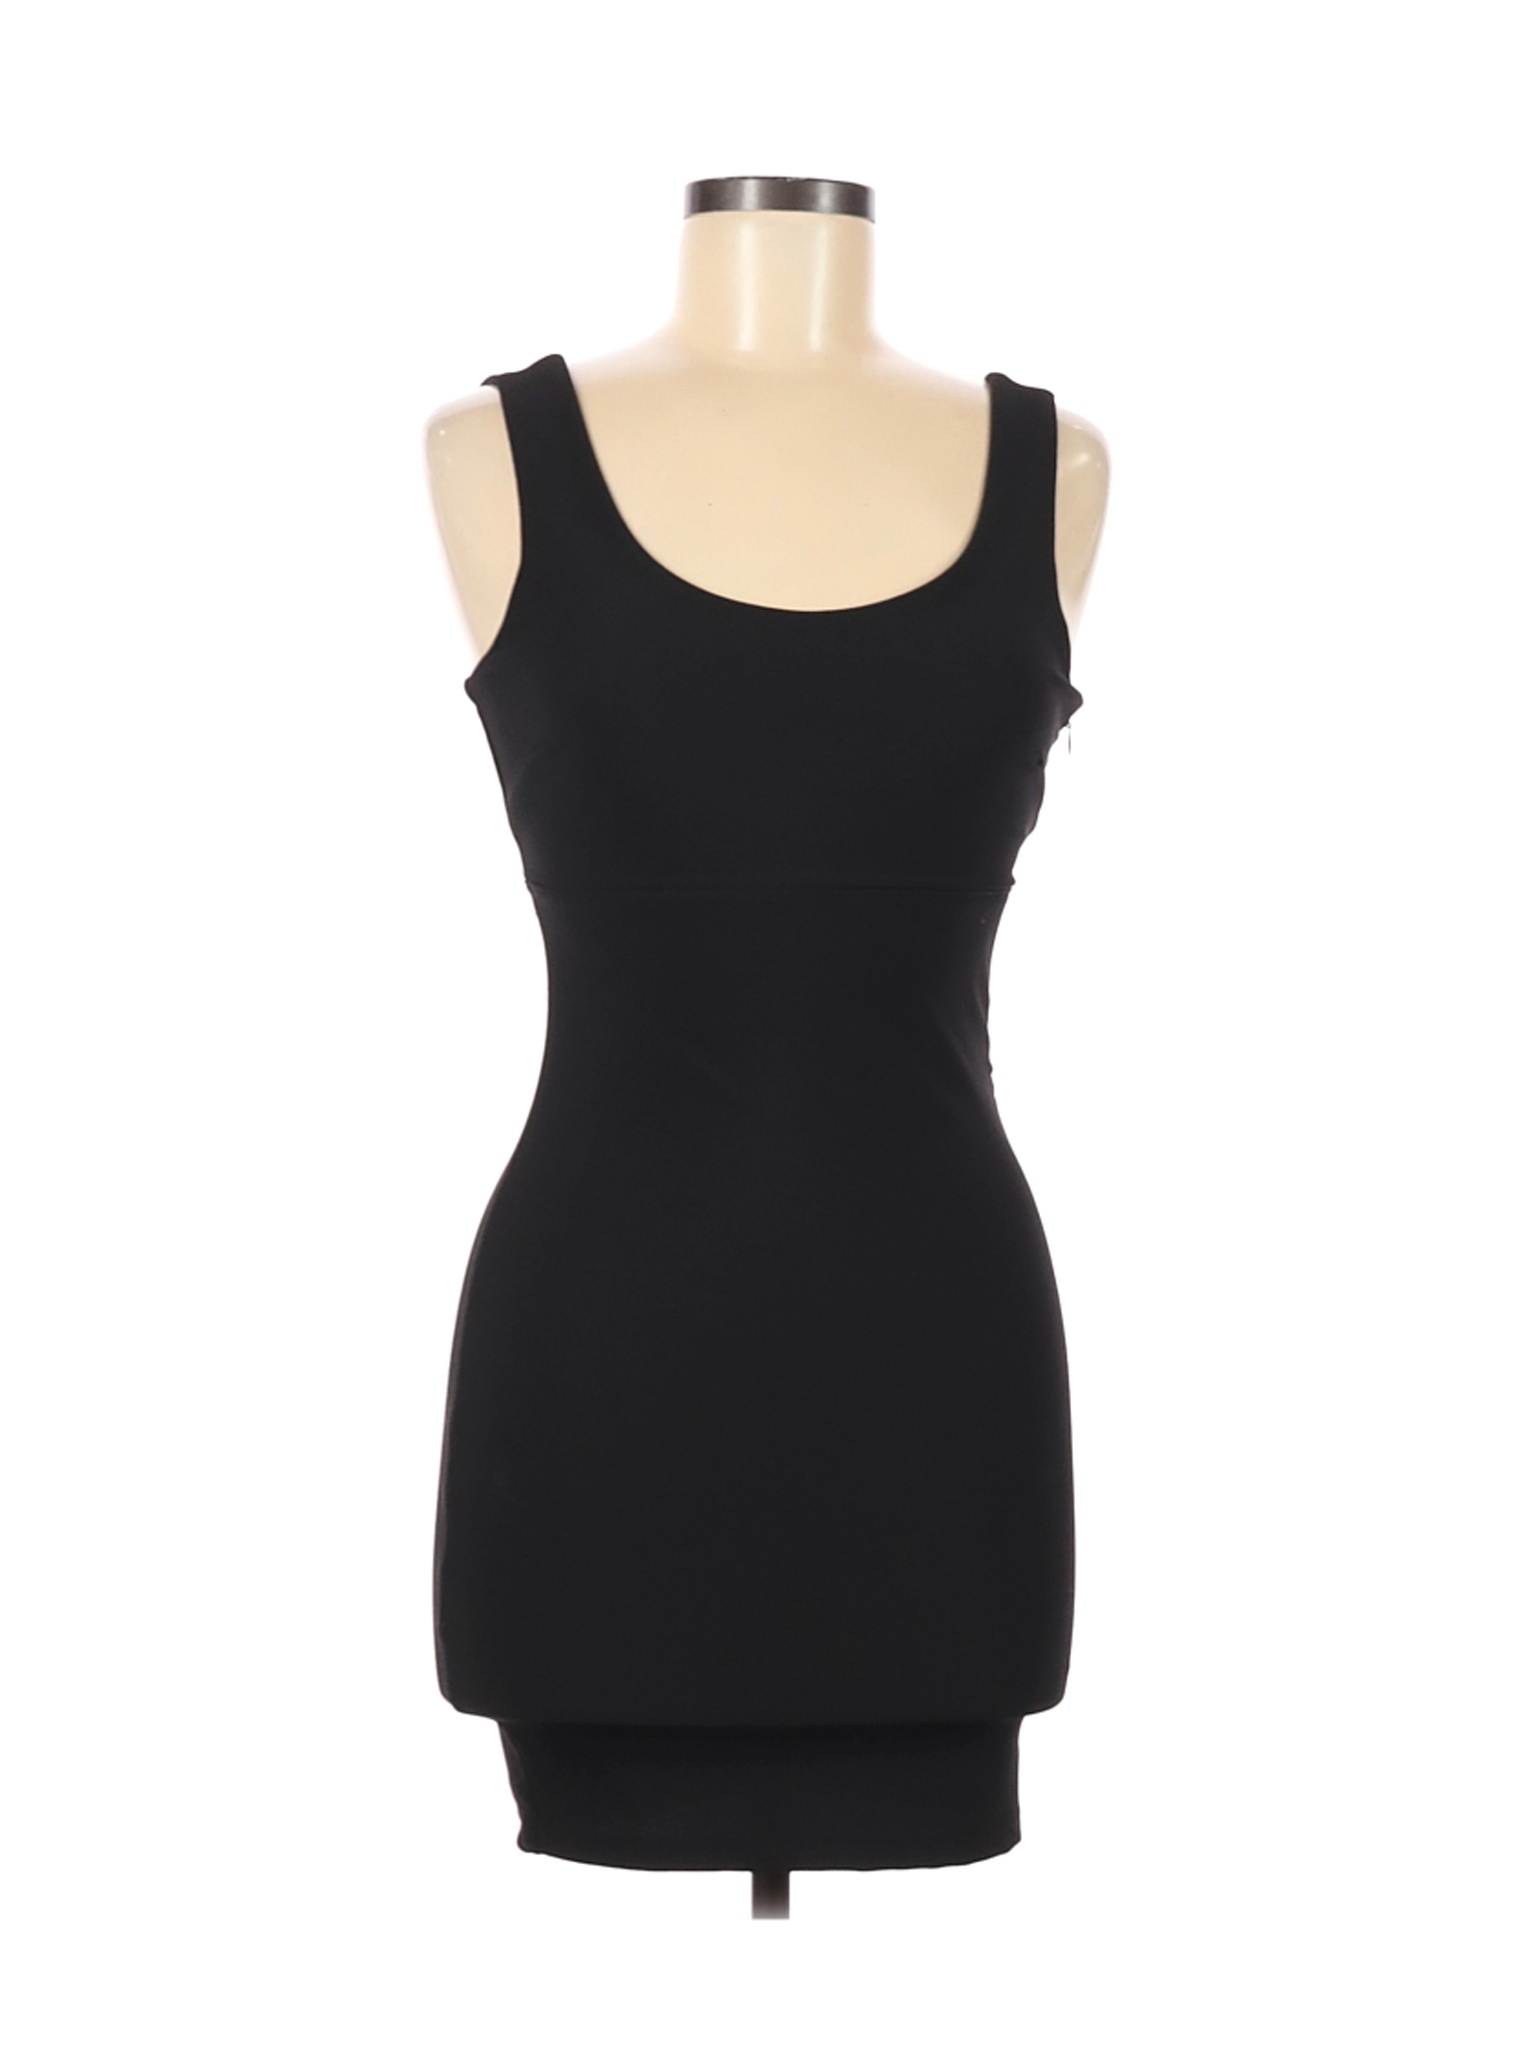 Forever 21 Women Black Cocktail Dress S | eBay